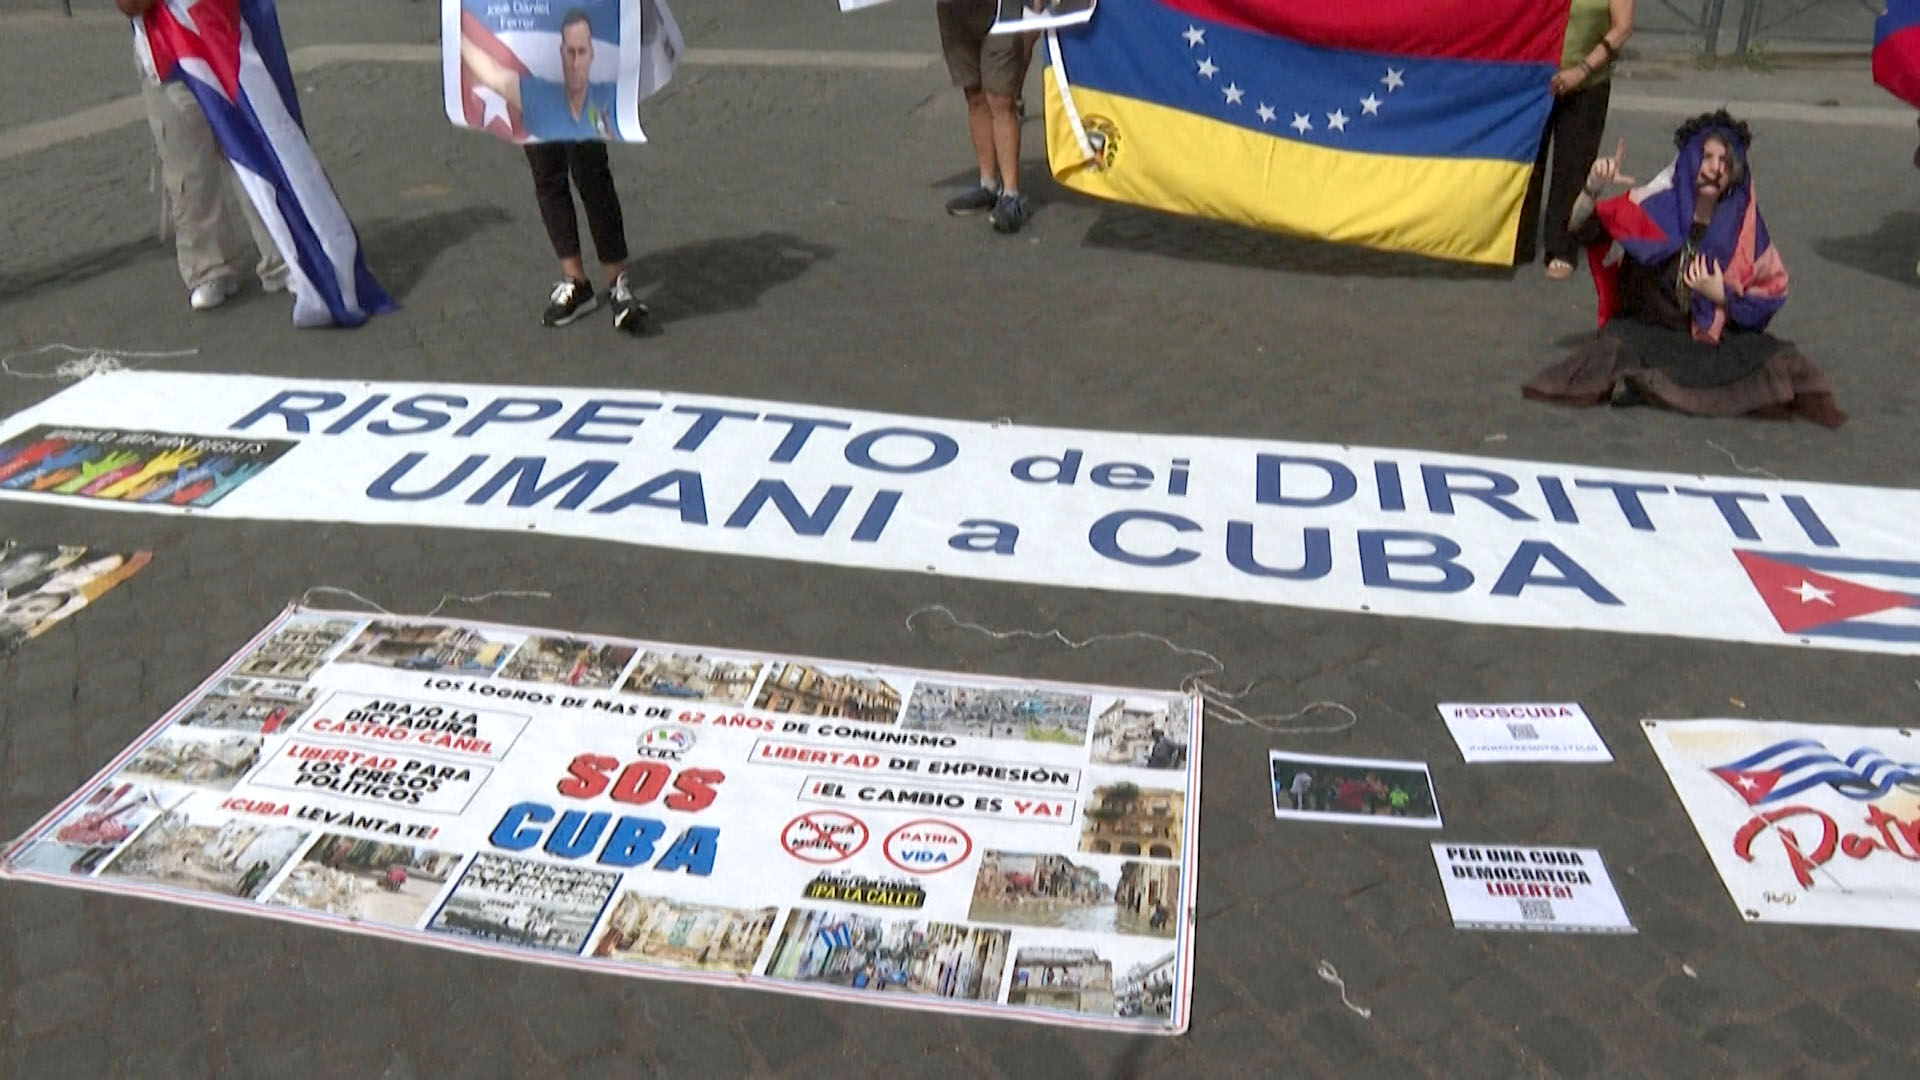 "Respeto a los derechos humanos en Cuba" y "SOS Cuba" fueron algunos de los mensajes que se leyeron en las pancartas de los manifestantes